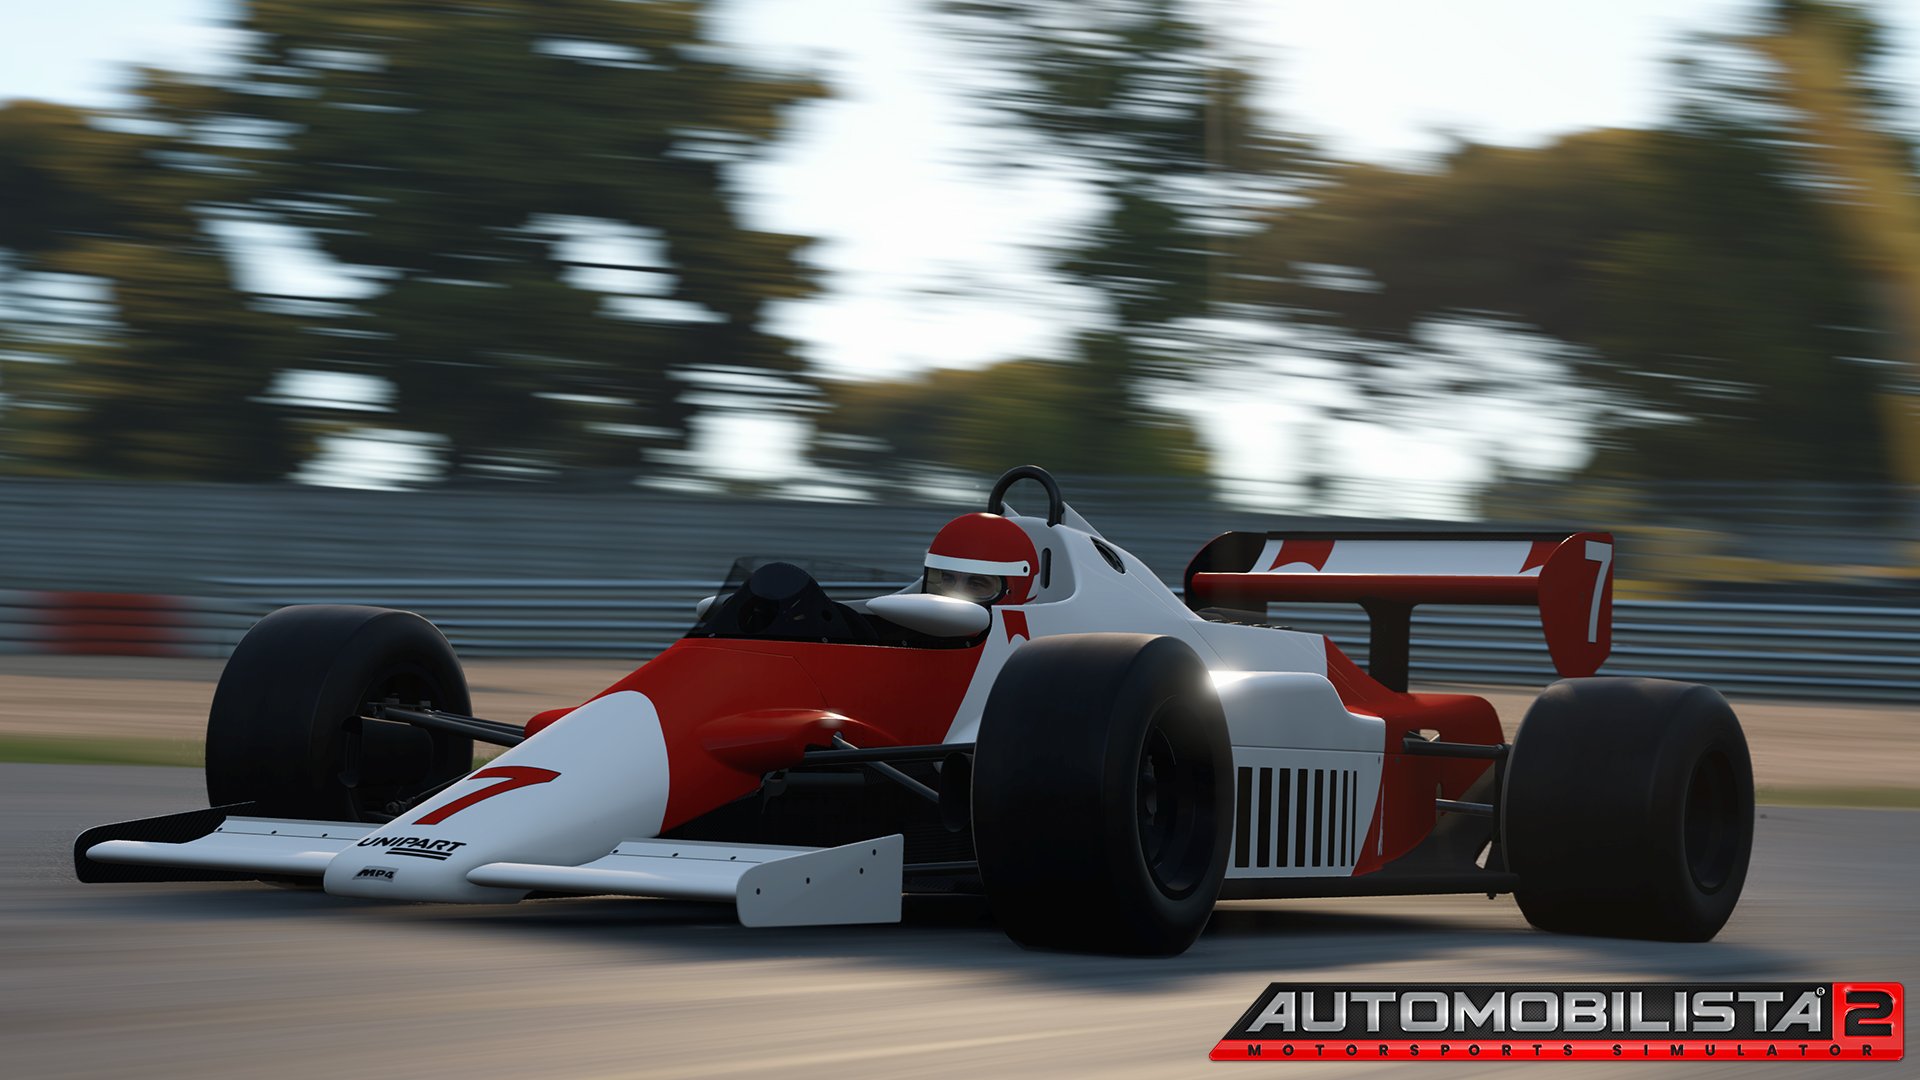 More information about "Automobilista 2: nuovo aggiornamento e primo Development Update 2022"